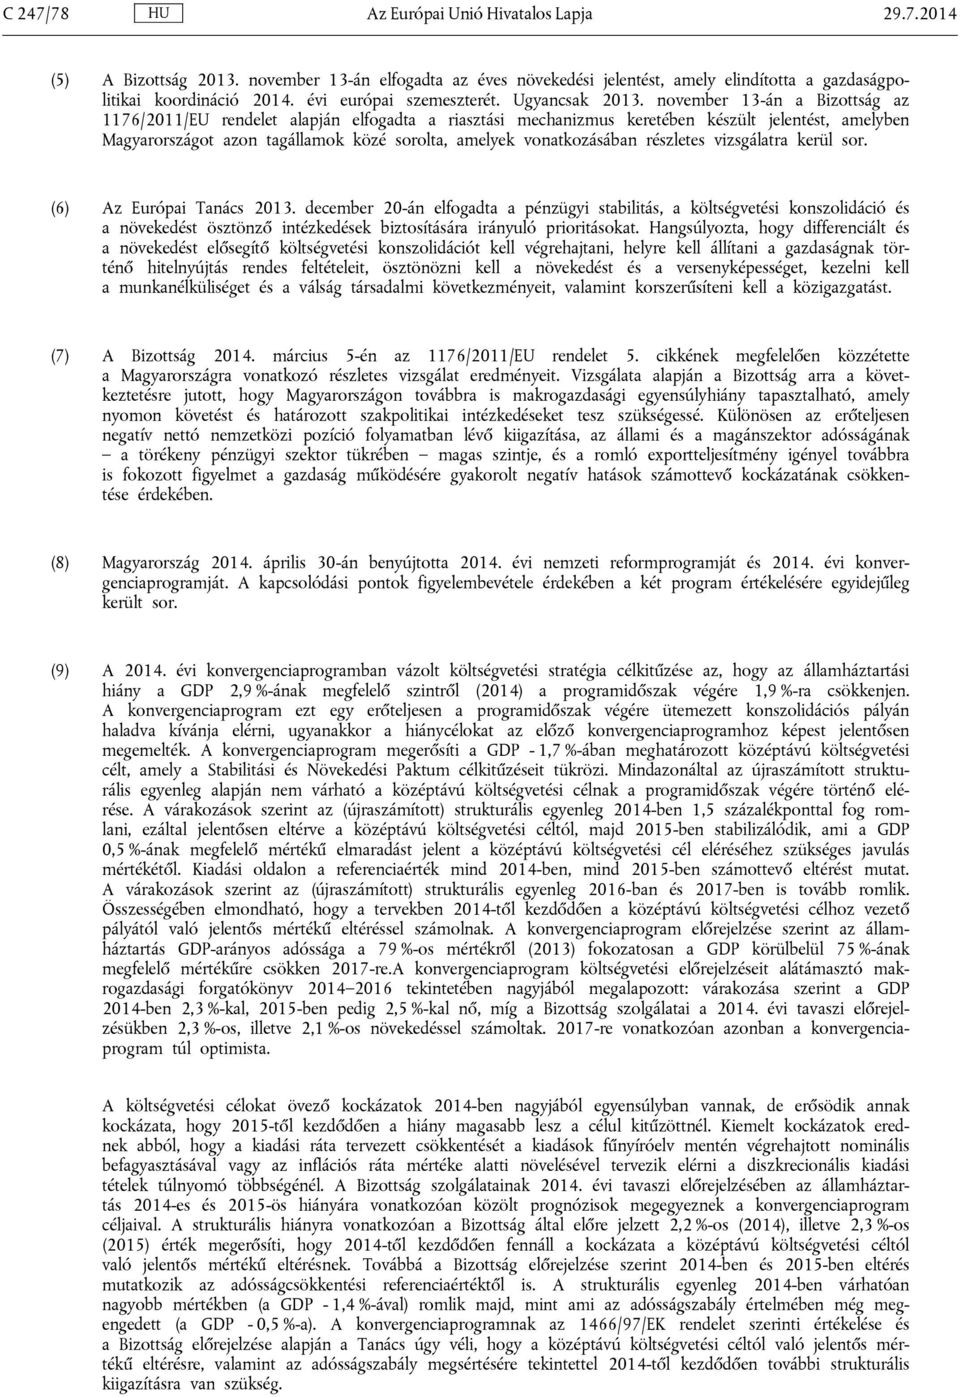 november 13-án a Bizottság az 1176/2011/EU rendelet alapján elfogadta a riasztási mechanizmus keretében készült jelentést, amelyben Magyarországot azon tagállamok közé sorolta, amelyek vonatkozásában